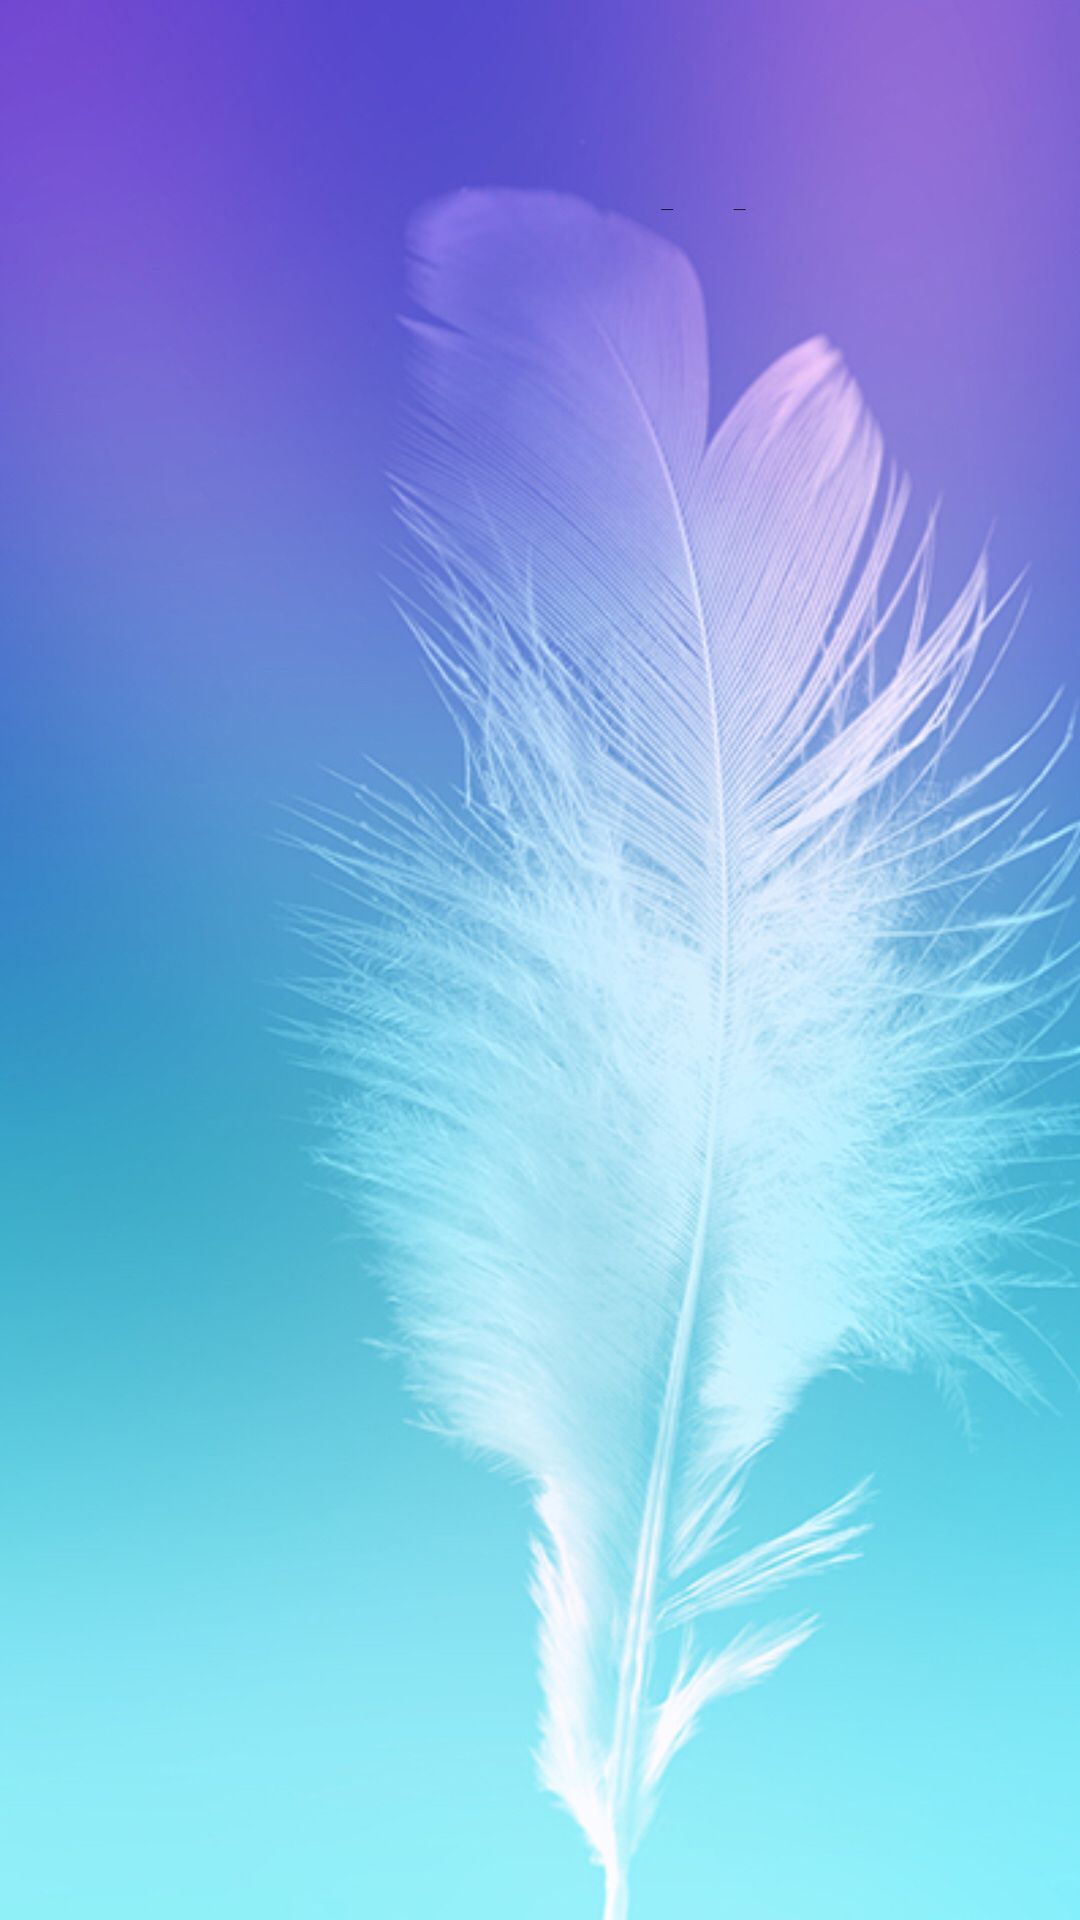 galaxy note 3 fond d'écran hd 1080p,plume,bleu,aile,ciel,plante